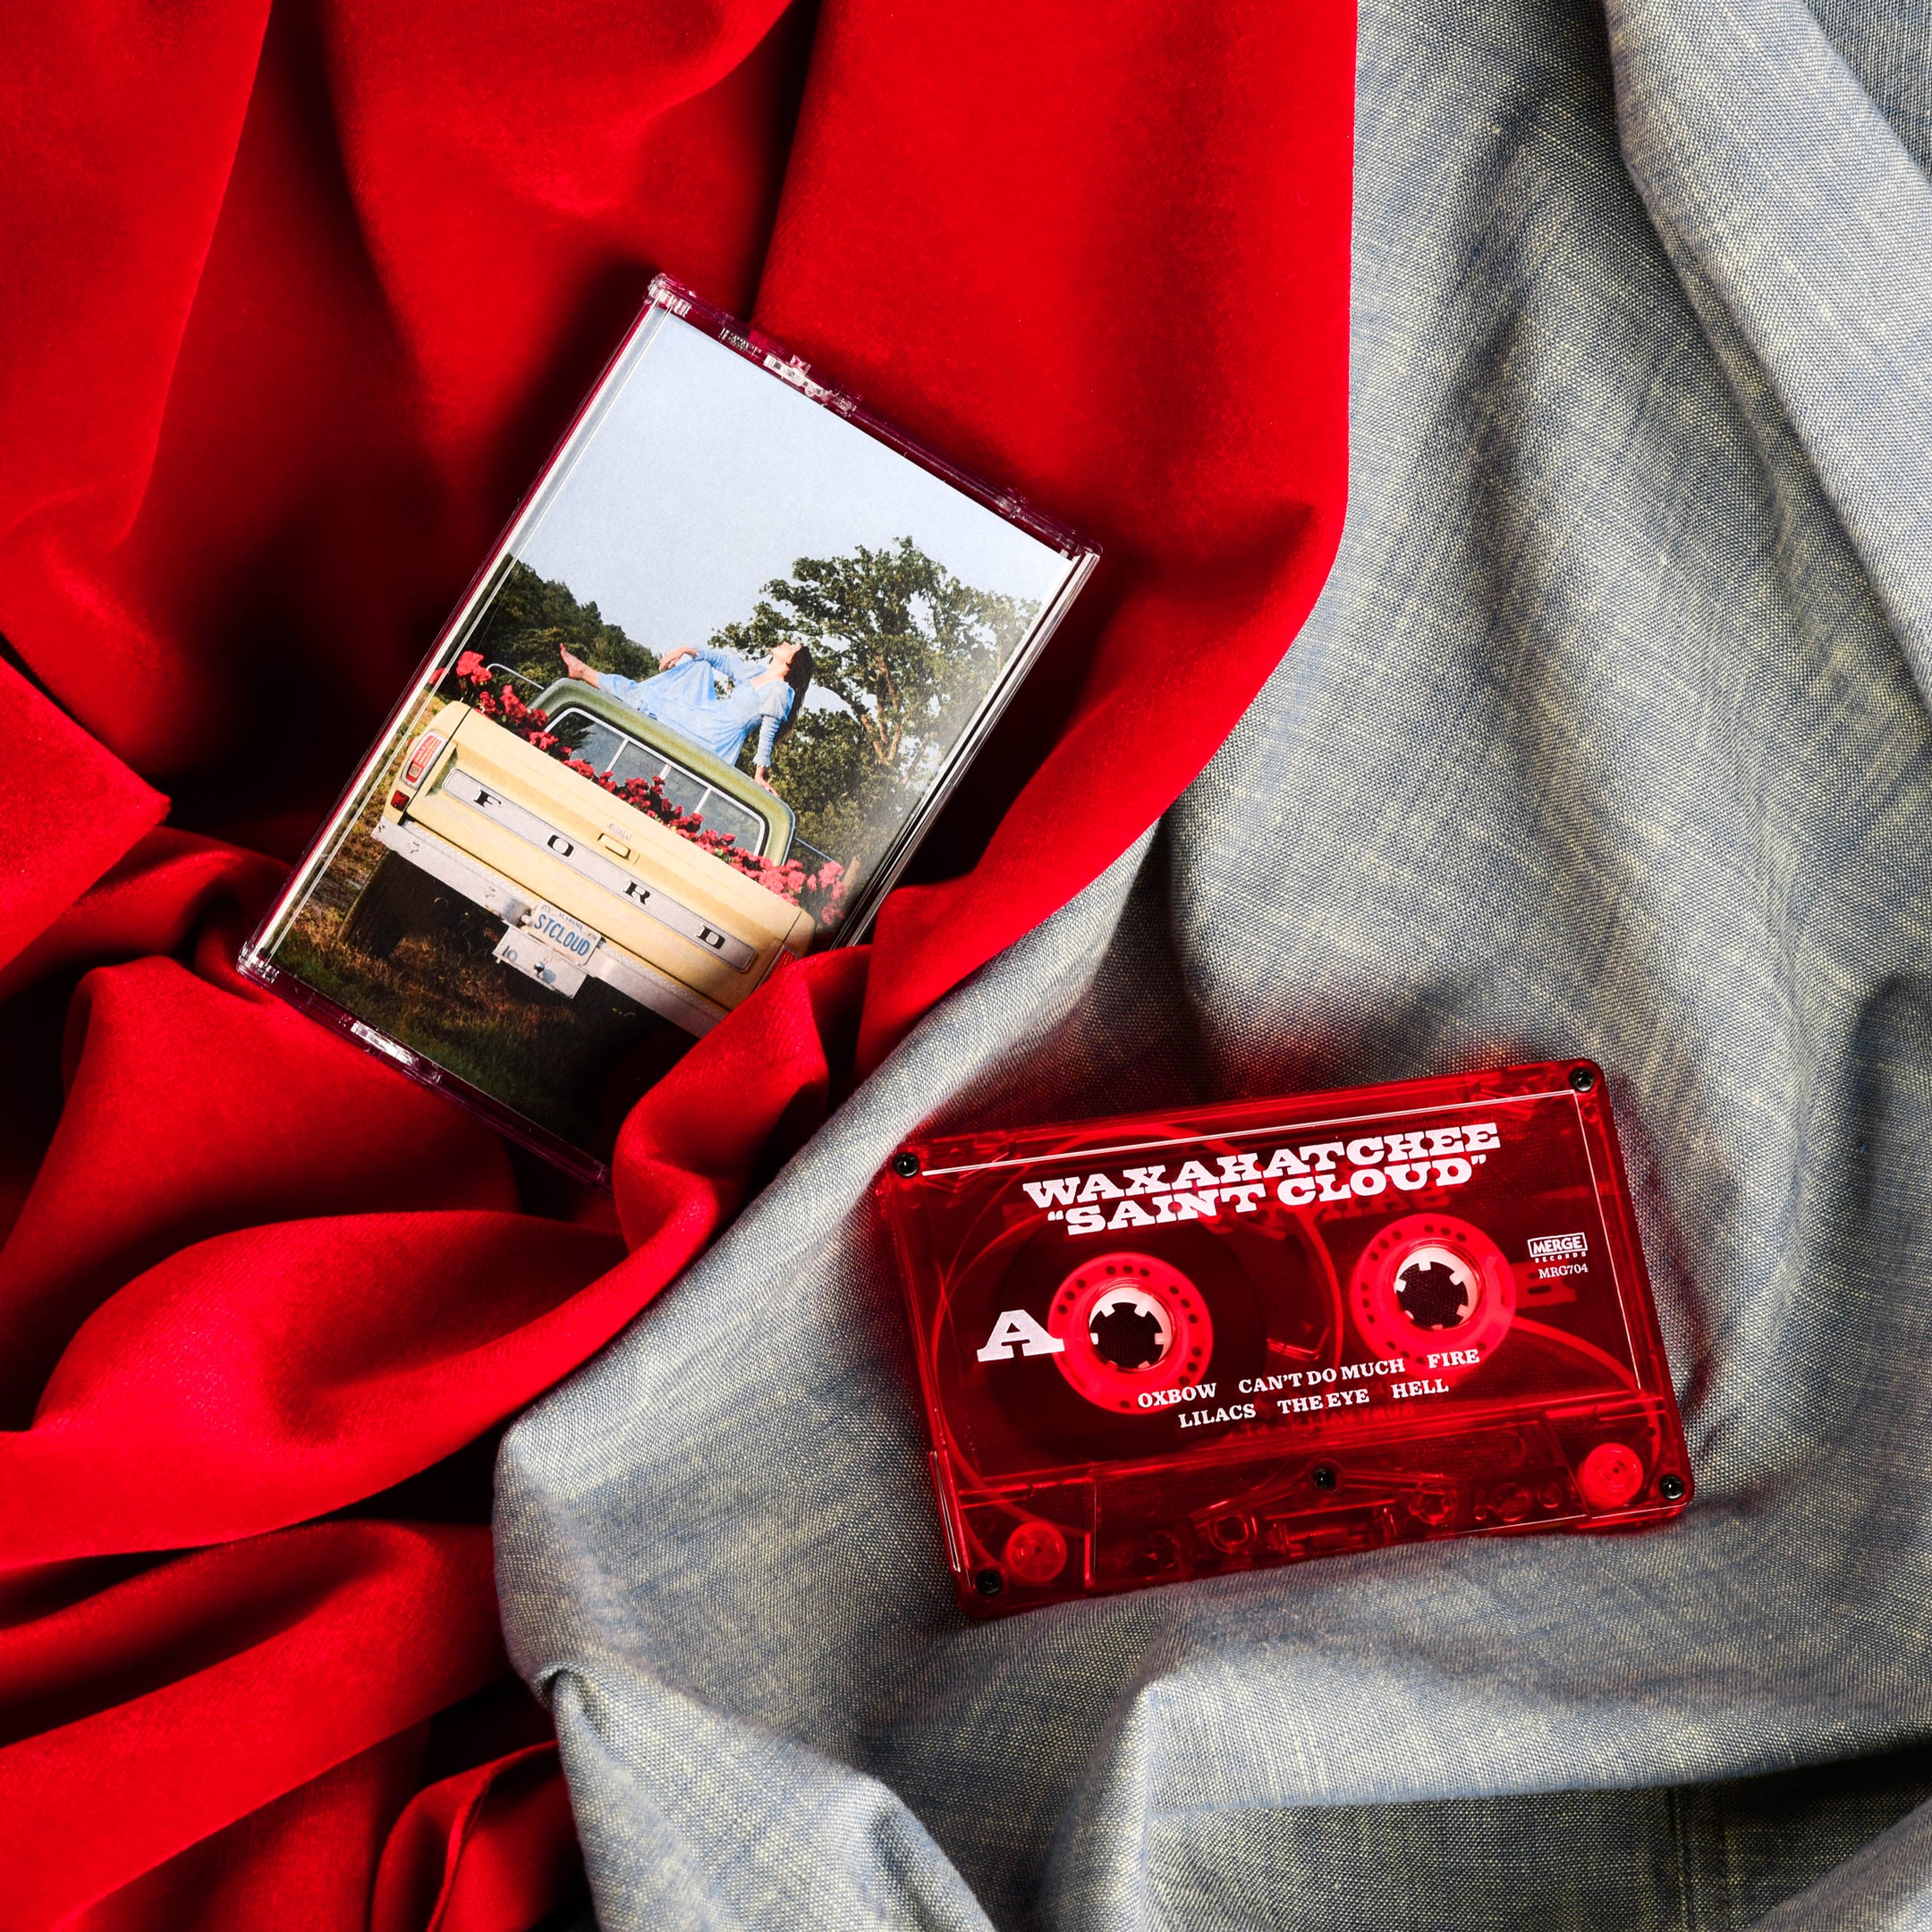 Retrospekt Exclusive Cassette: Waxahatchee's Saint Cloud Available Now!